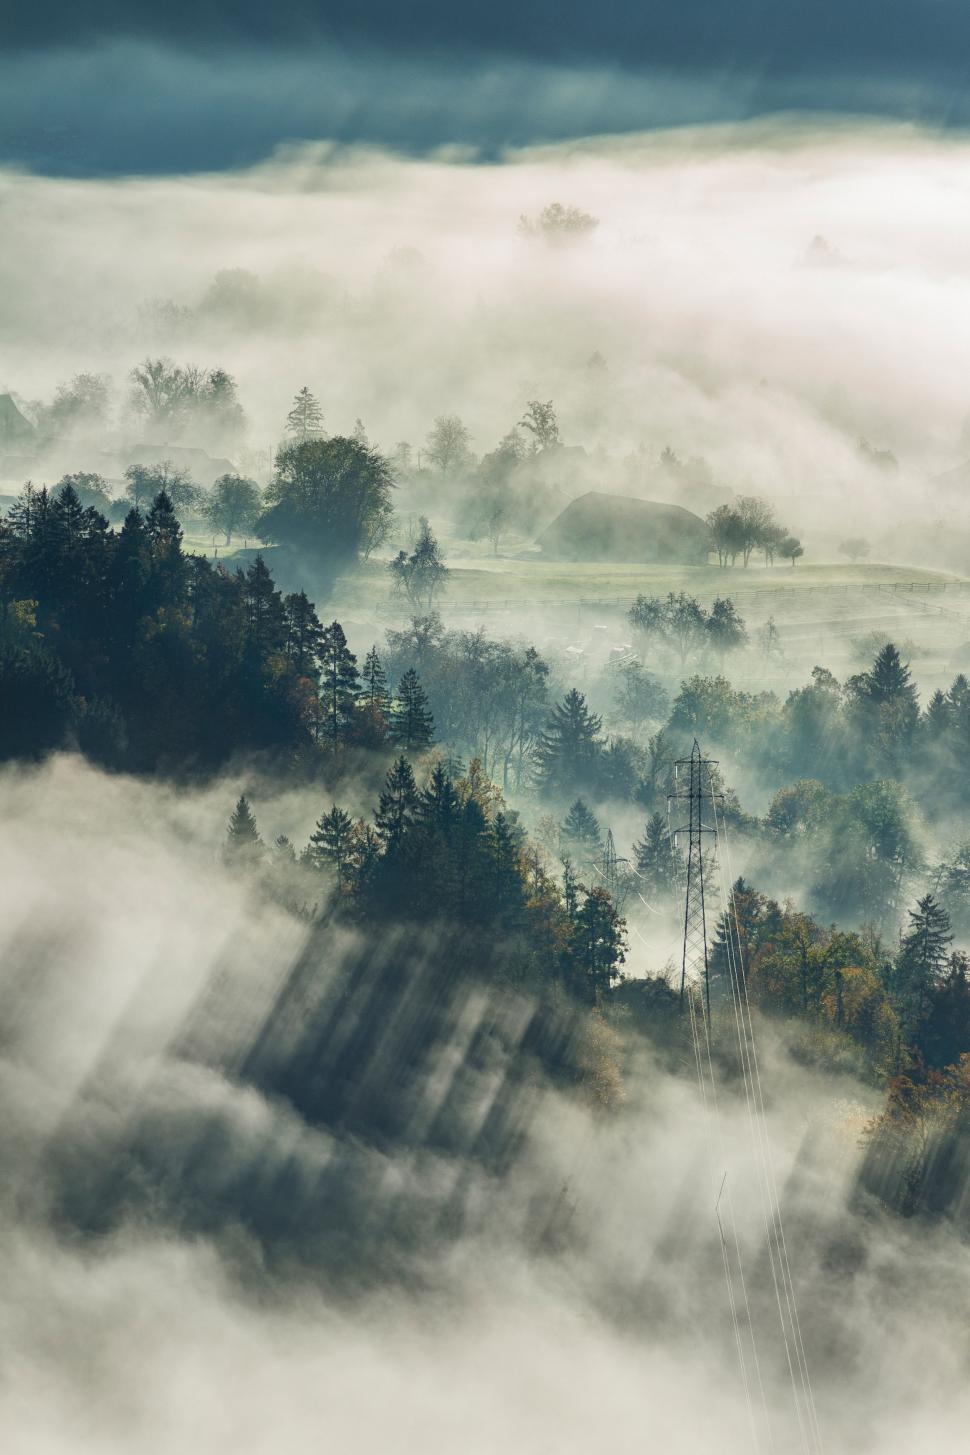 Free Image of Fog Envelops Forest Landscape 